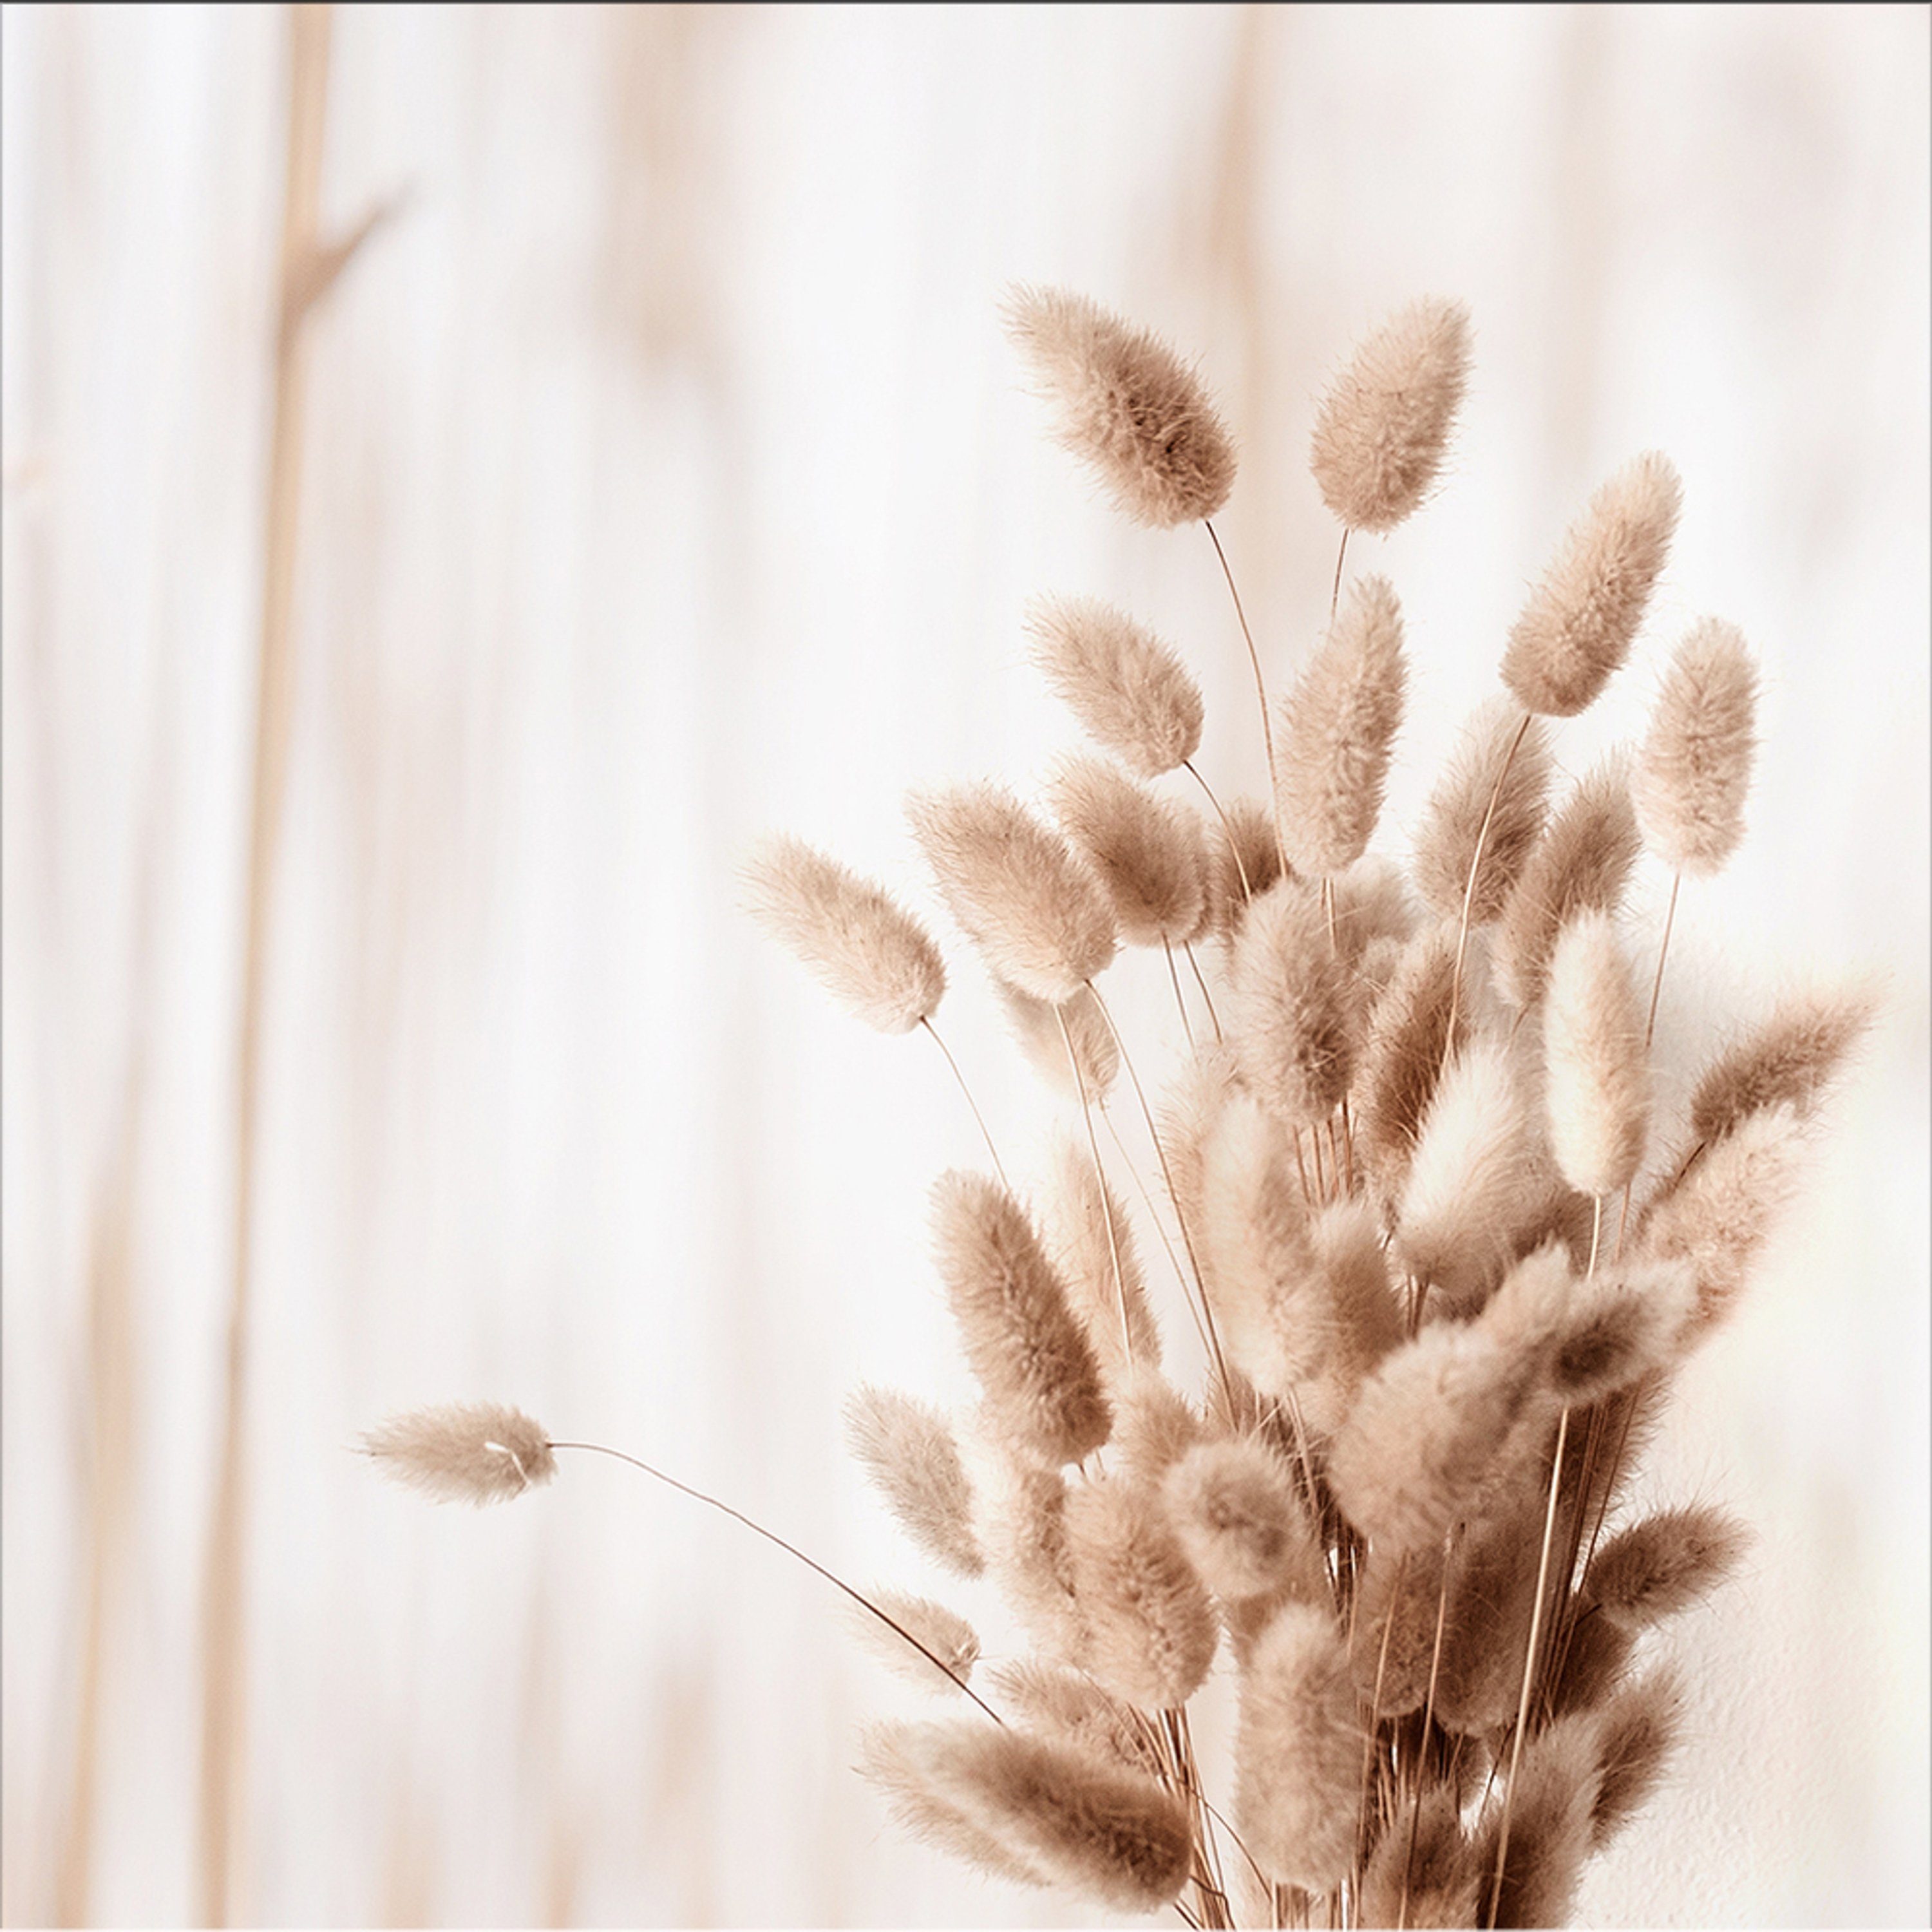 artissimo Glasbild Glasbild 30x30cm Bild Pamapasgras Natur Gräser beige weiß, Natur: Gräser beige